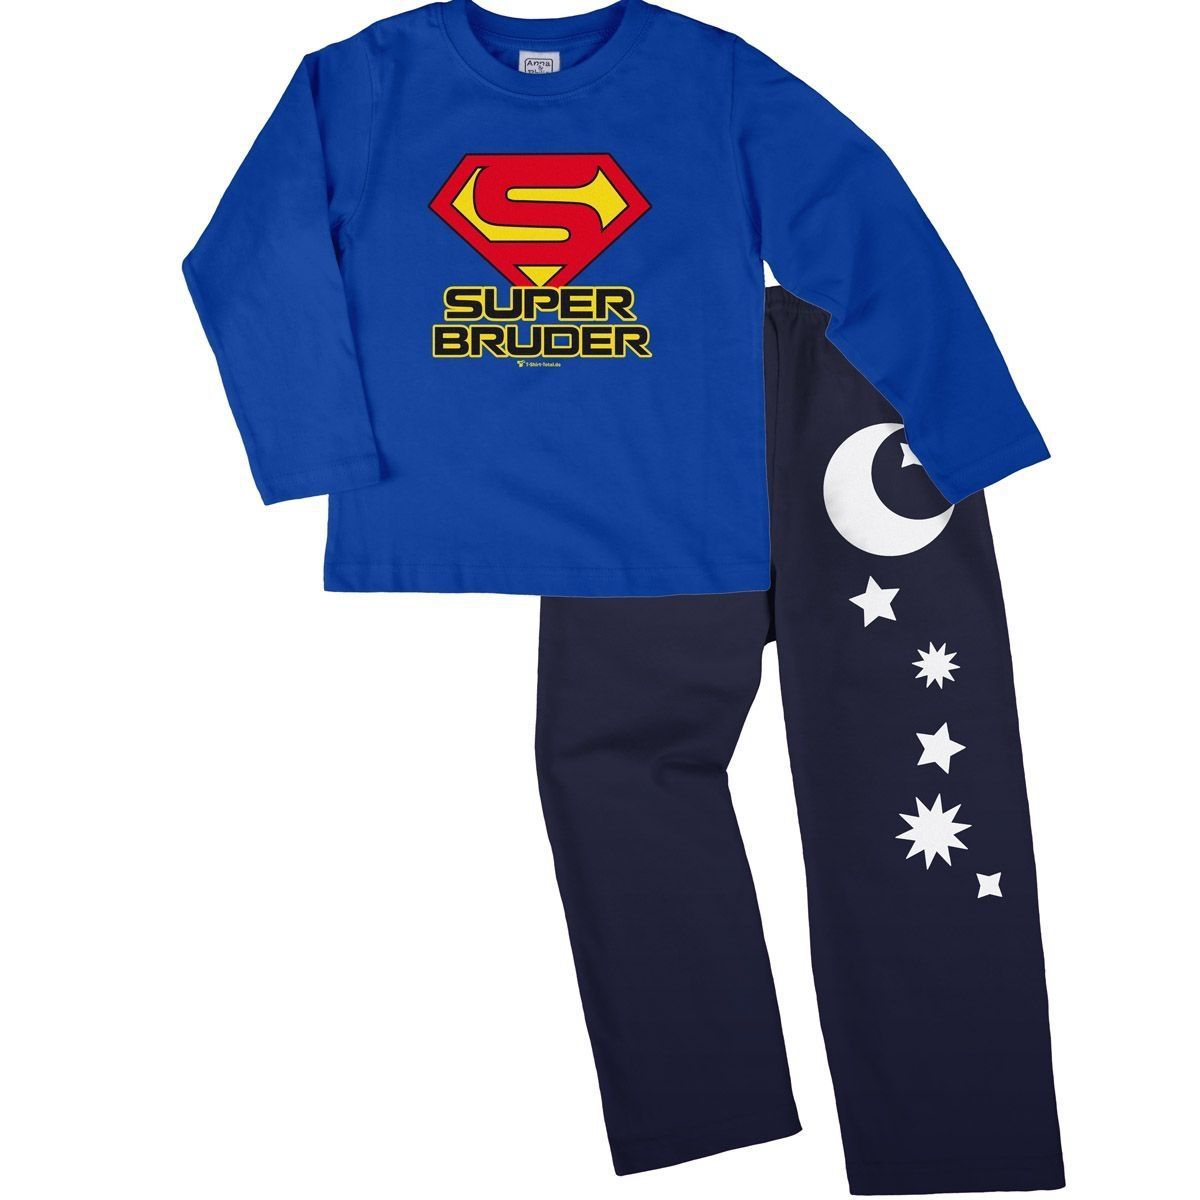 Super Bruder Pyjama Set royal / navy 134 / 140